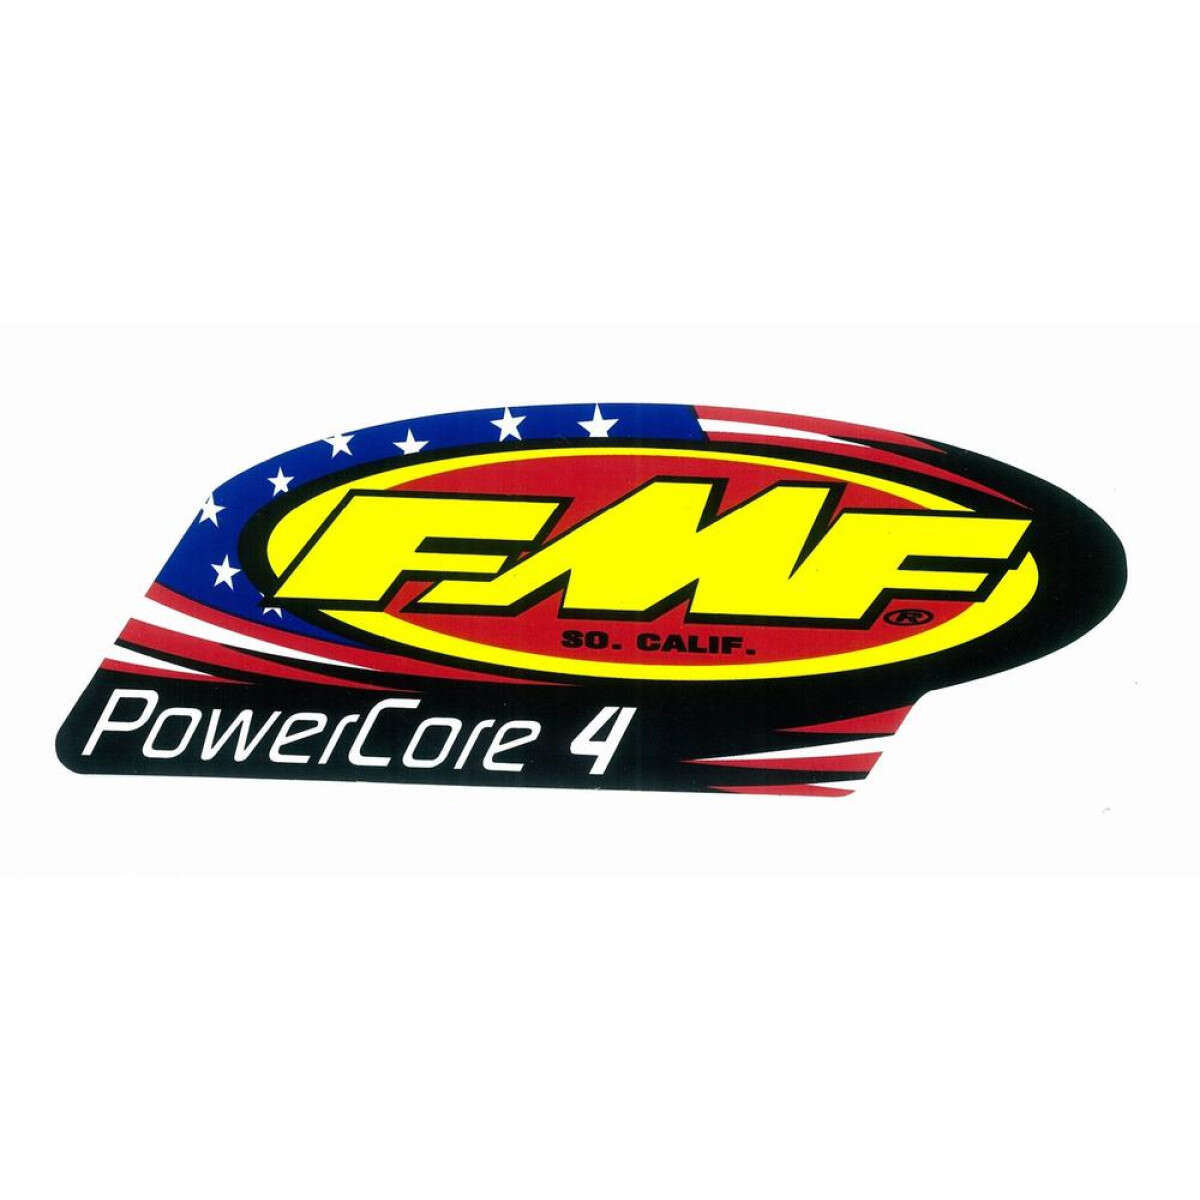 FMF Silencer Sticker  PowerCore 4 Patriotic, Alumium